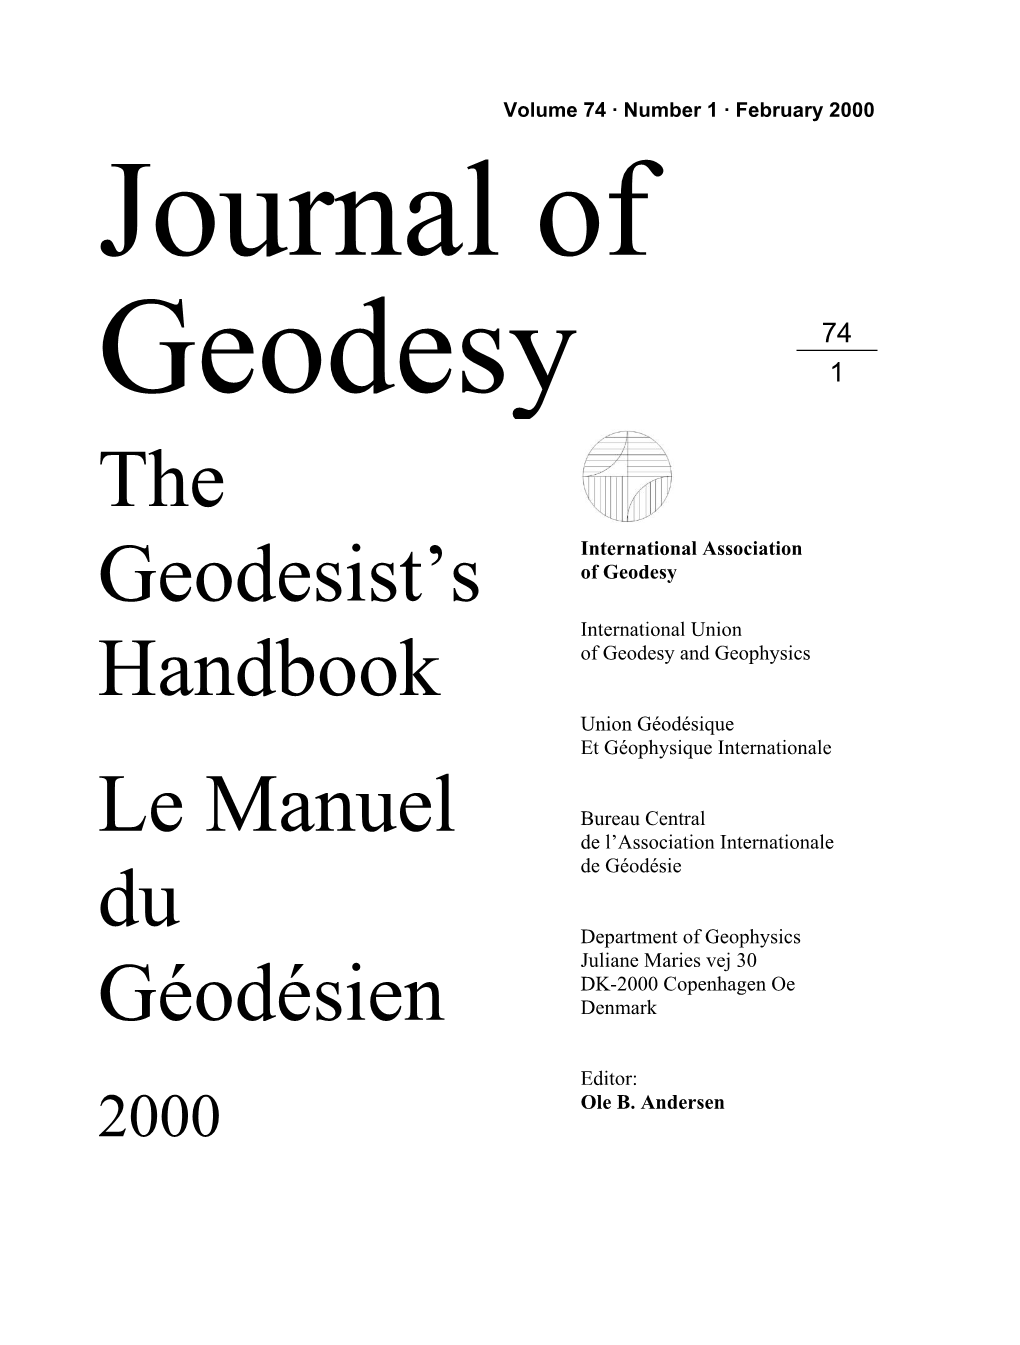 The Geodesist's Handbook 2000.Pdf